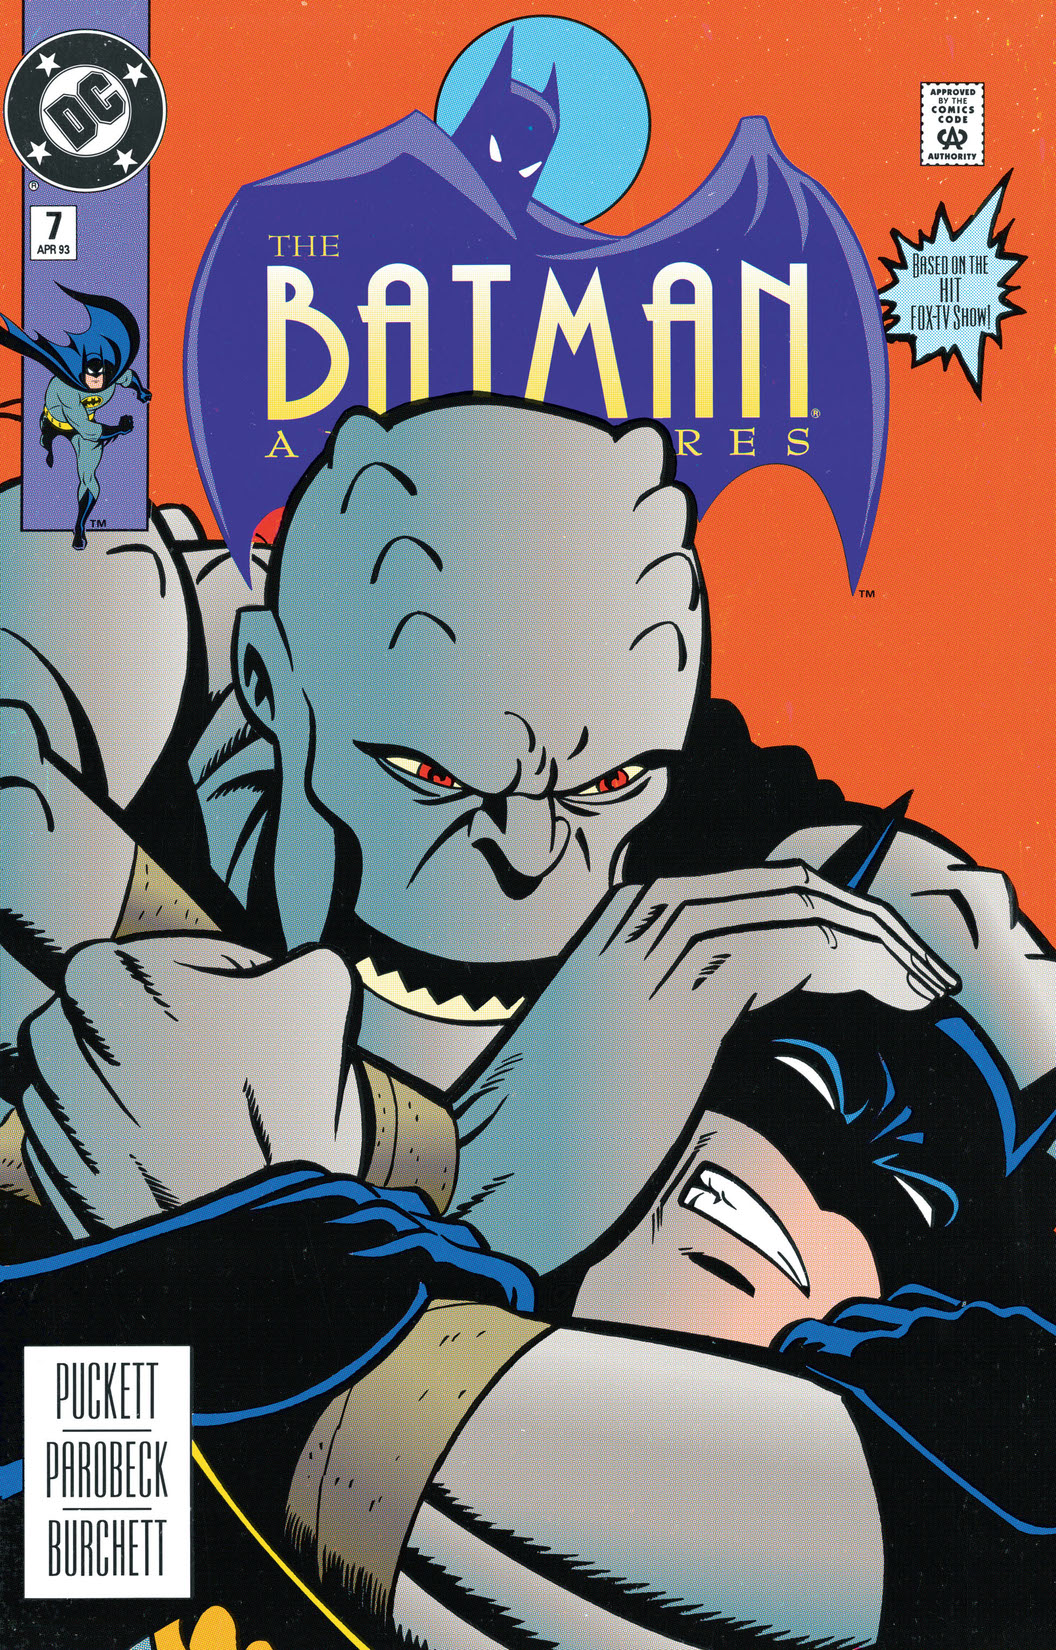 The Batman Adventures #7 preview images